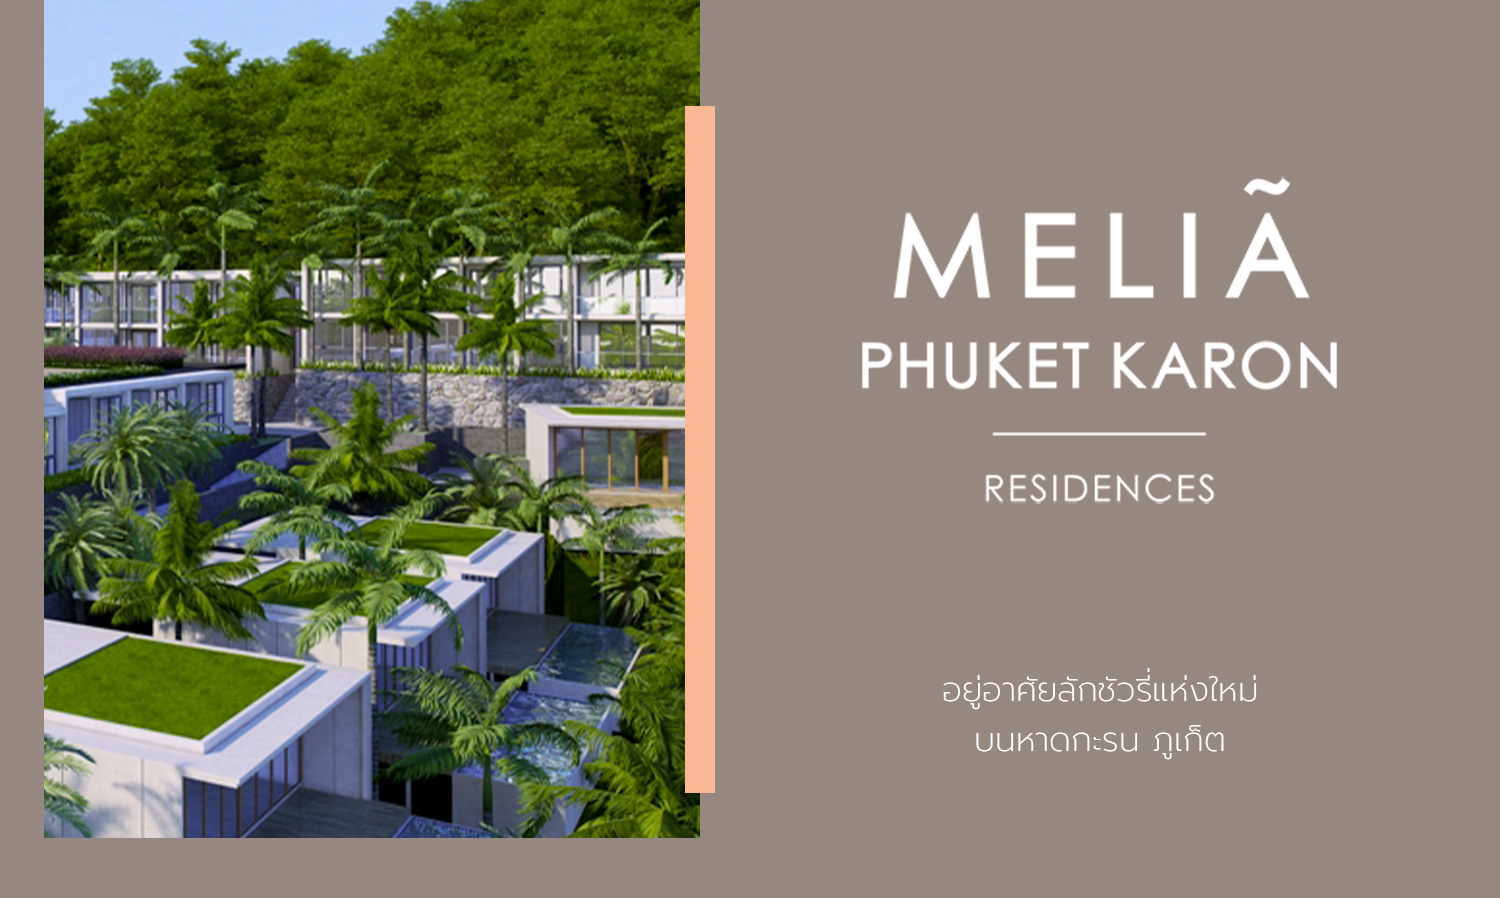 melia-phuket-karon-residences-อยู่อาศัยลักชัวรี่แห่งใ